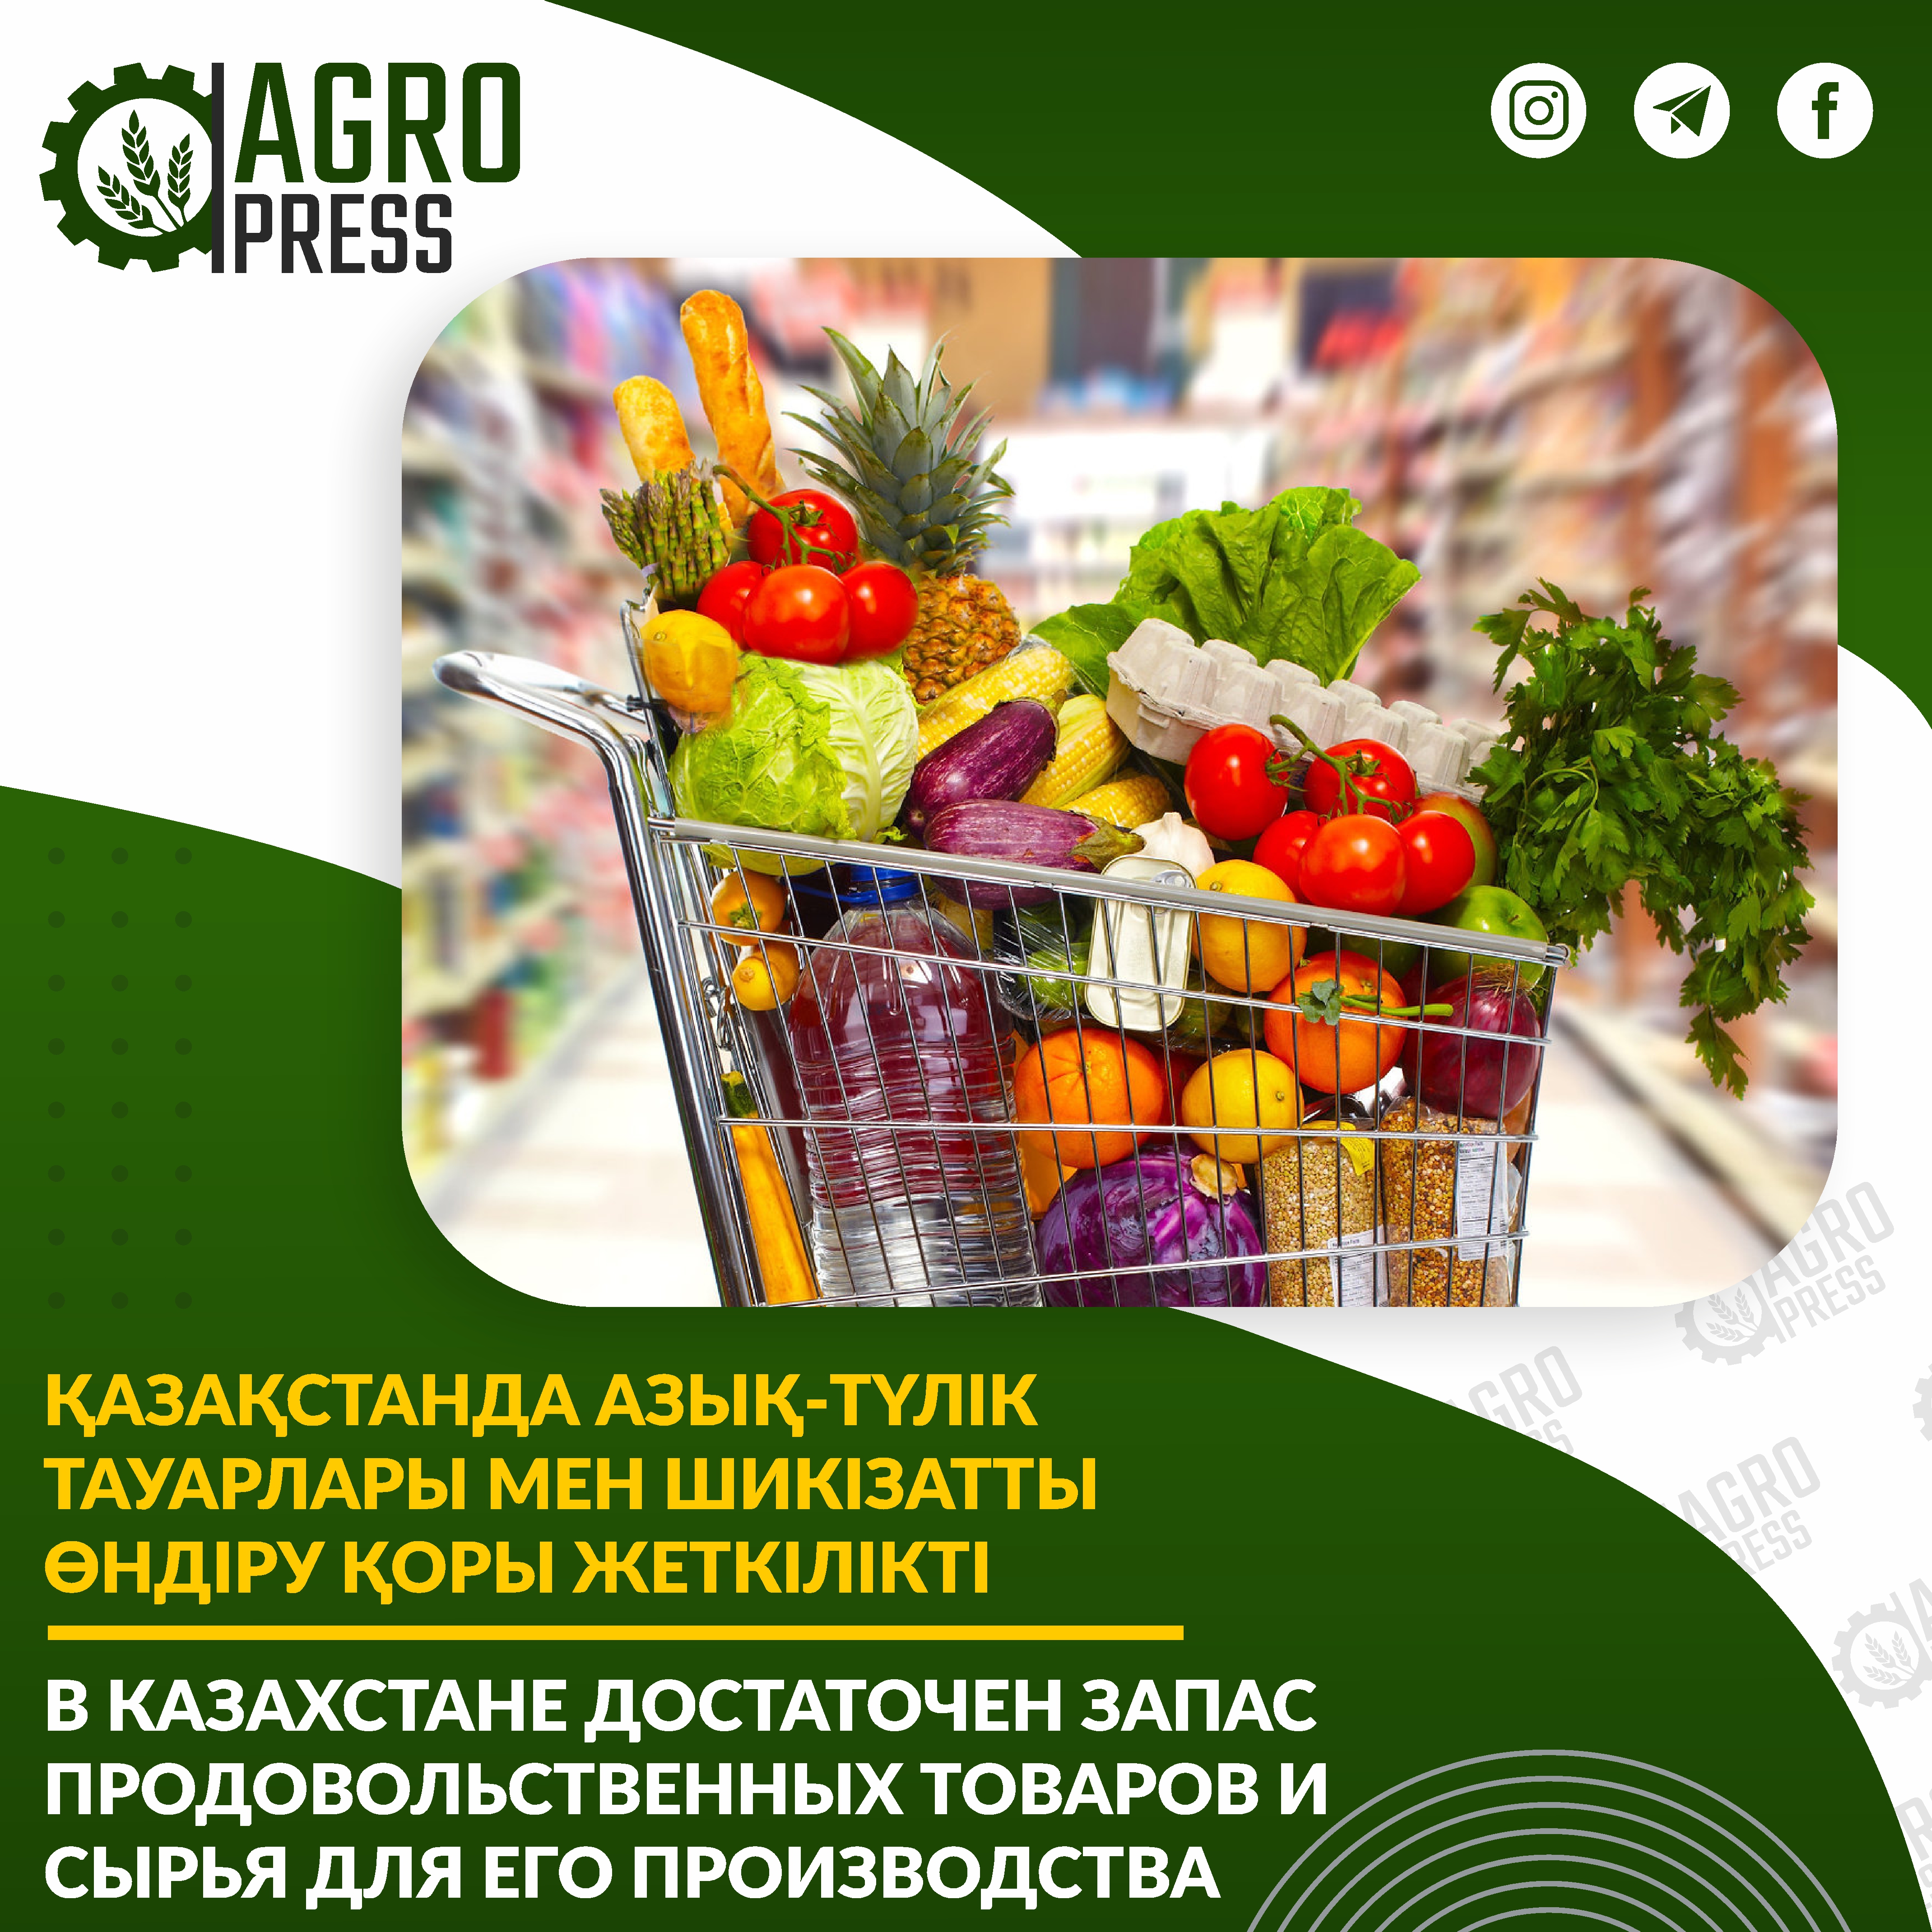 В Казахстане достаточен запас продовольственных товаров и сырья для его производства